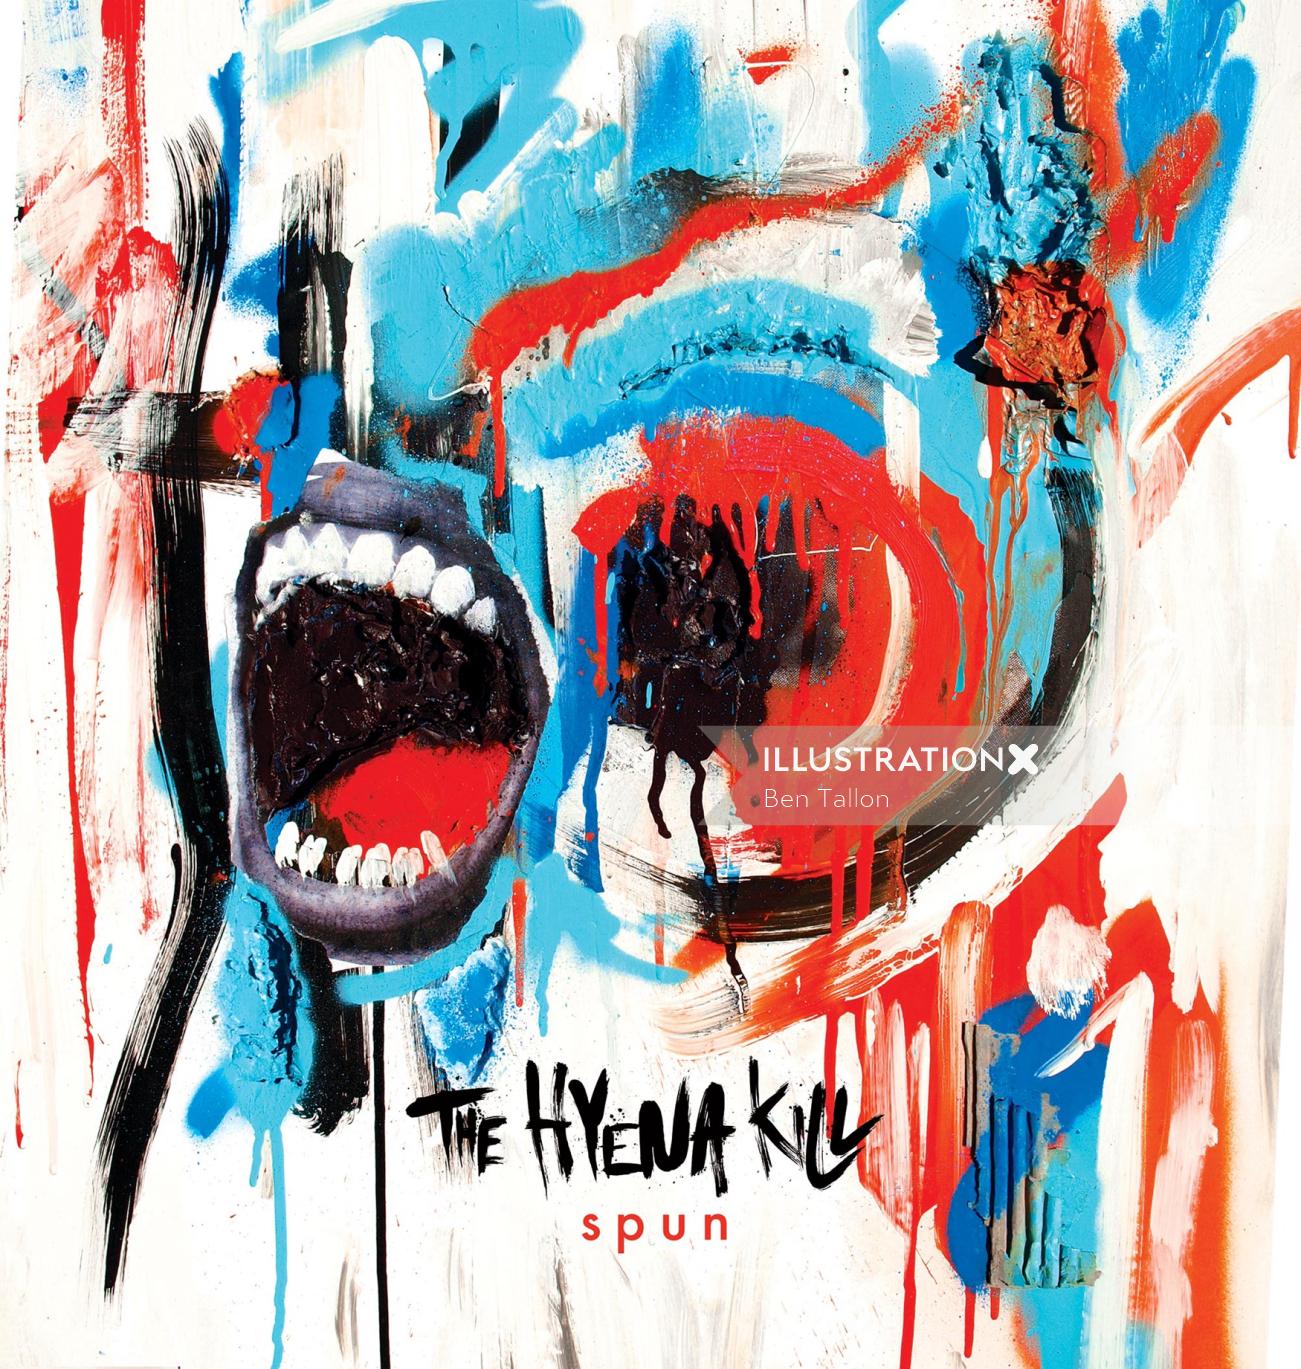 The Hyena Kill 'Spun' original album cover artwork